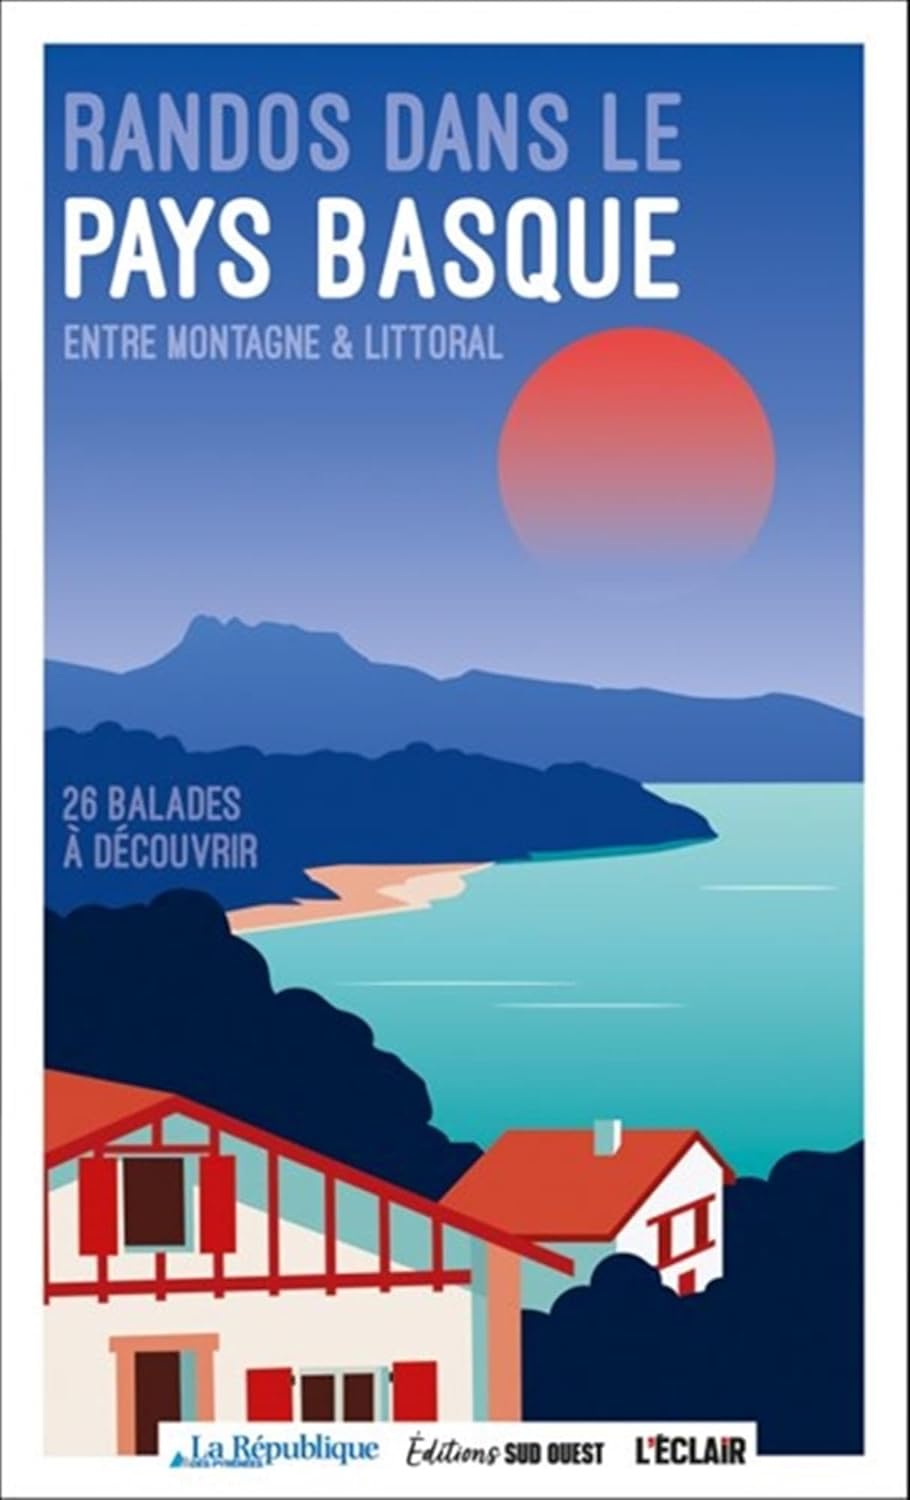 Guide de balades - Randos dans le Pays basque entre montagne et littoral, entre montagne et littoral | Sud Ouest